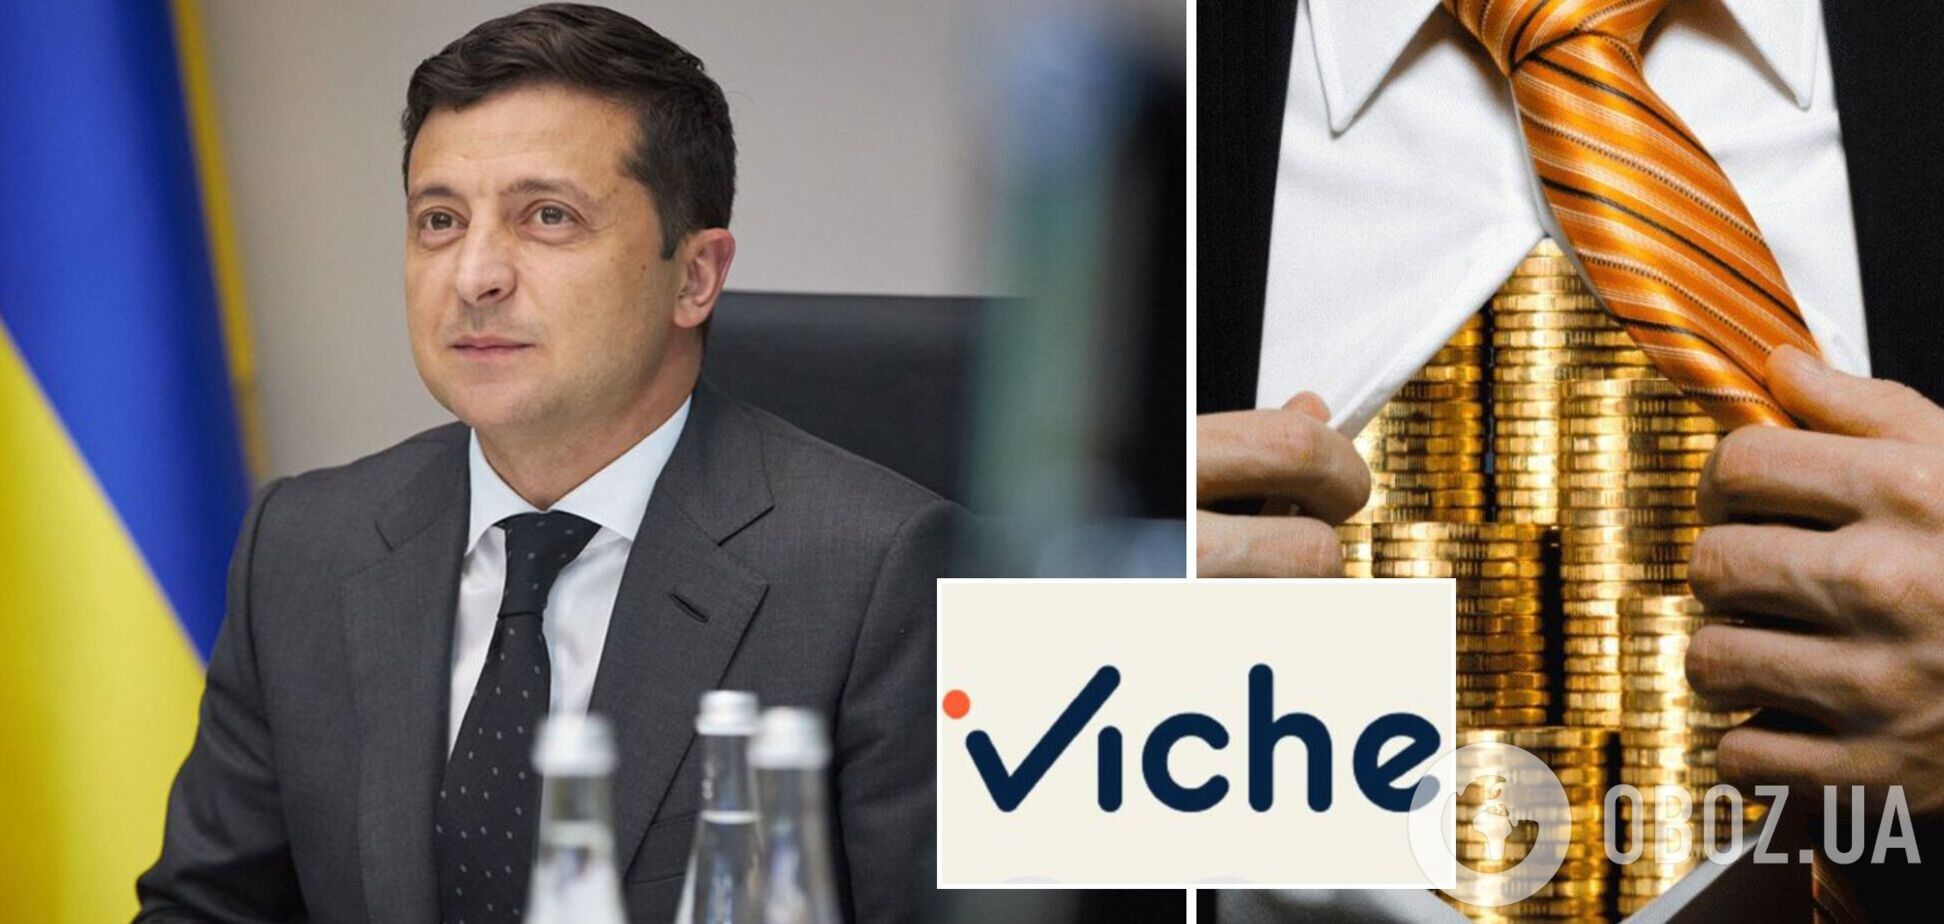 iViche почало опитування щодо пропозиції Зеленського розробити закон про олігархів в Україні